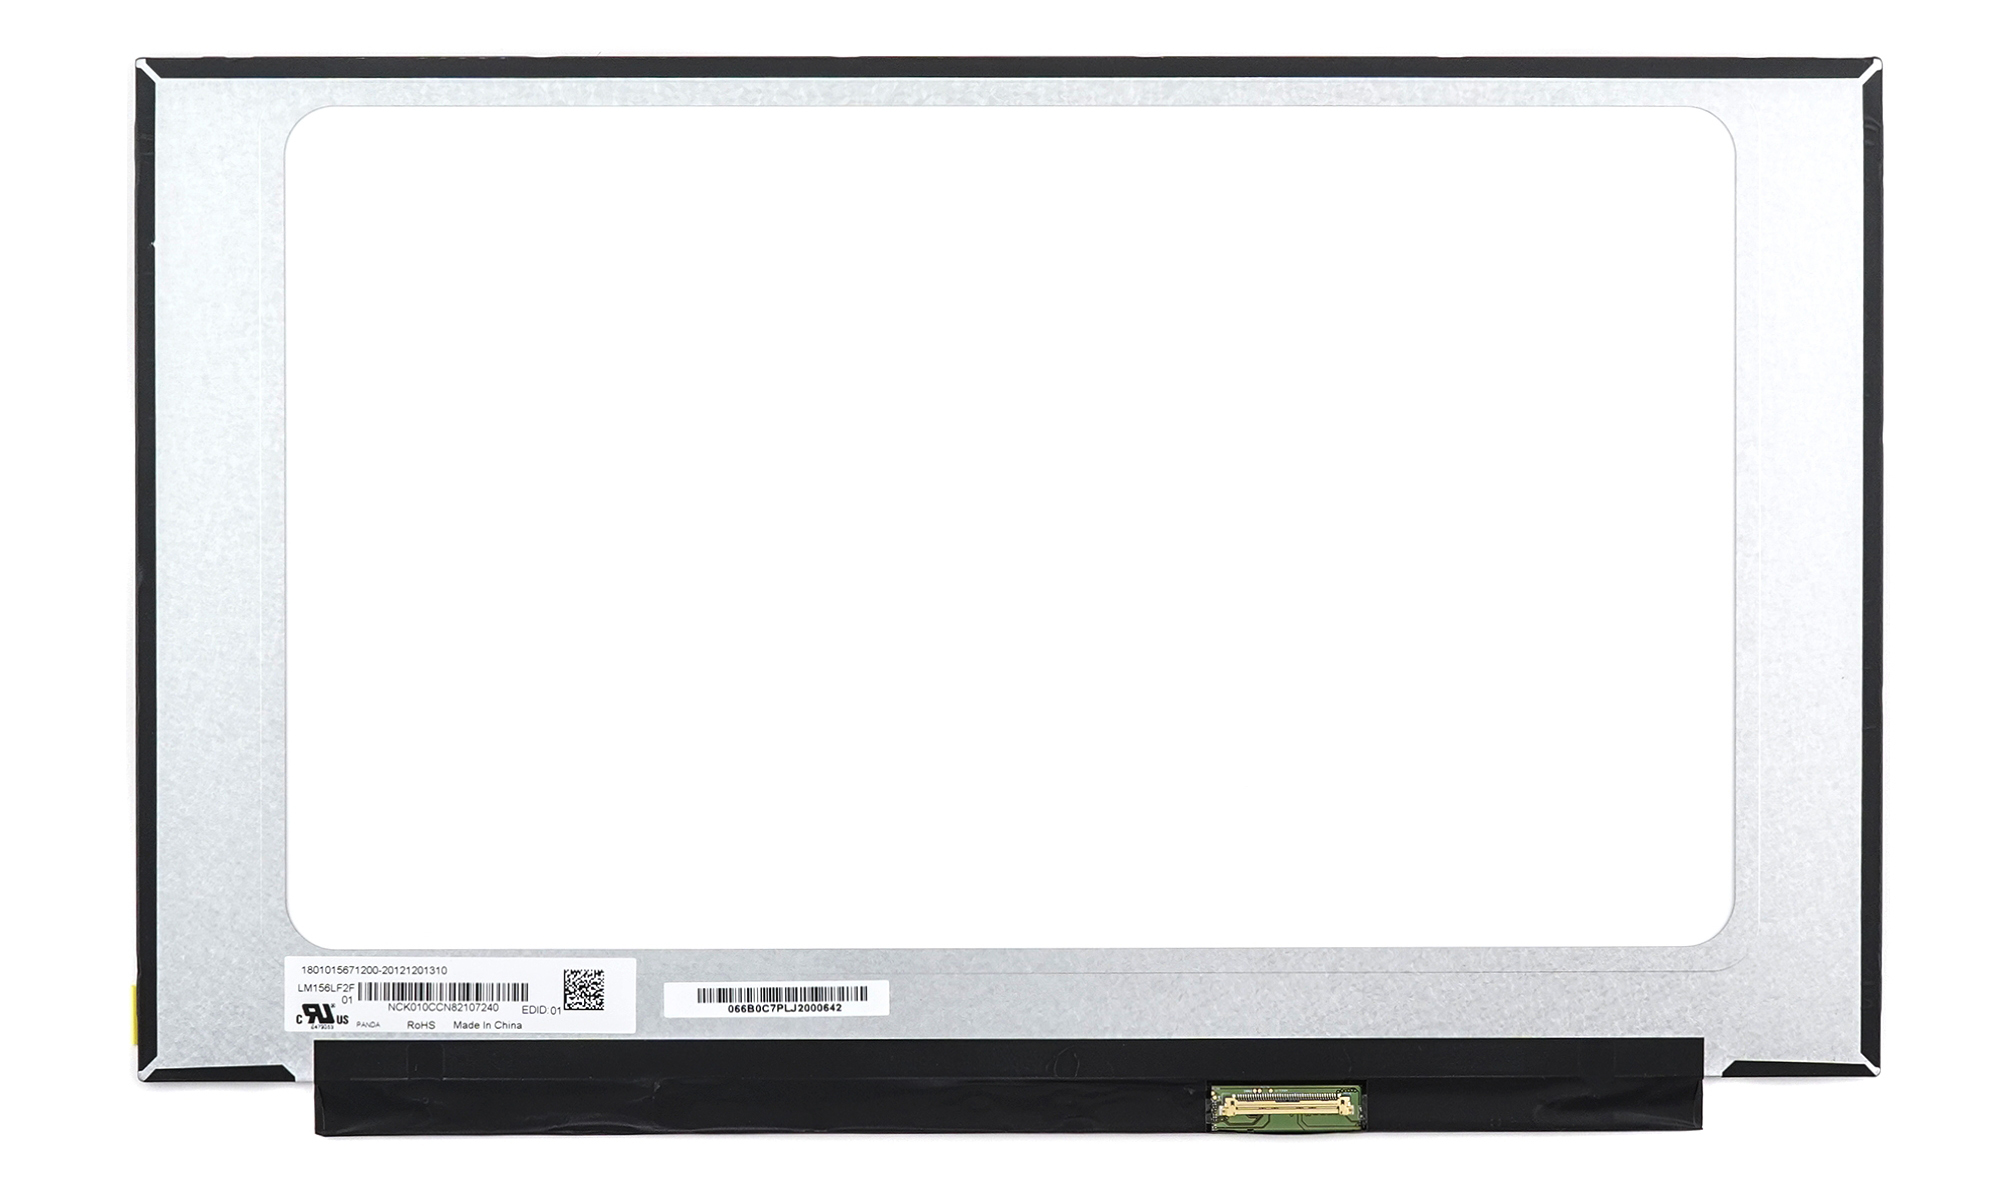 Матрица OEM для ноутбука LM156LF2F01, купить в Москве, цены в интернет-магазинах на Мегамаркет